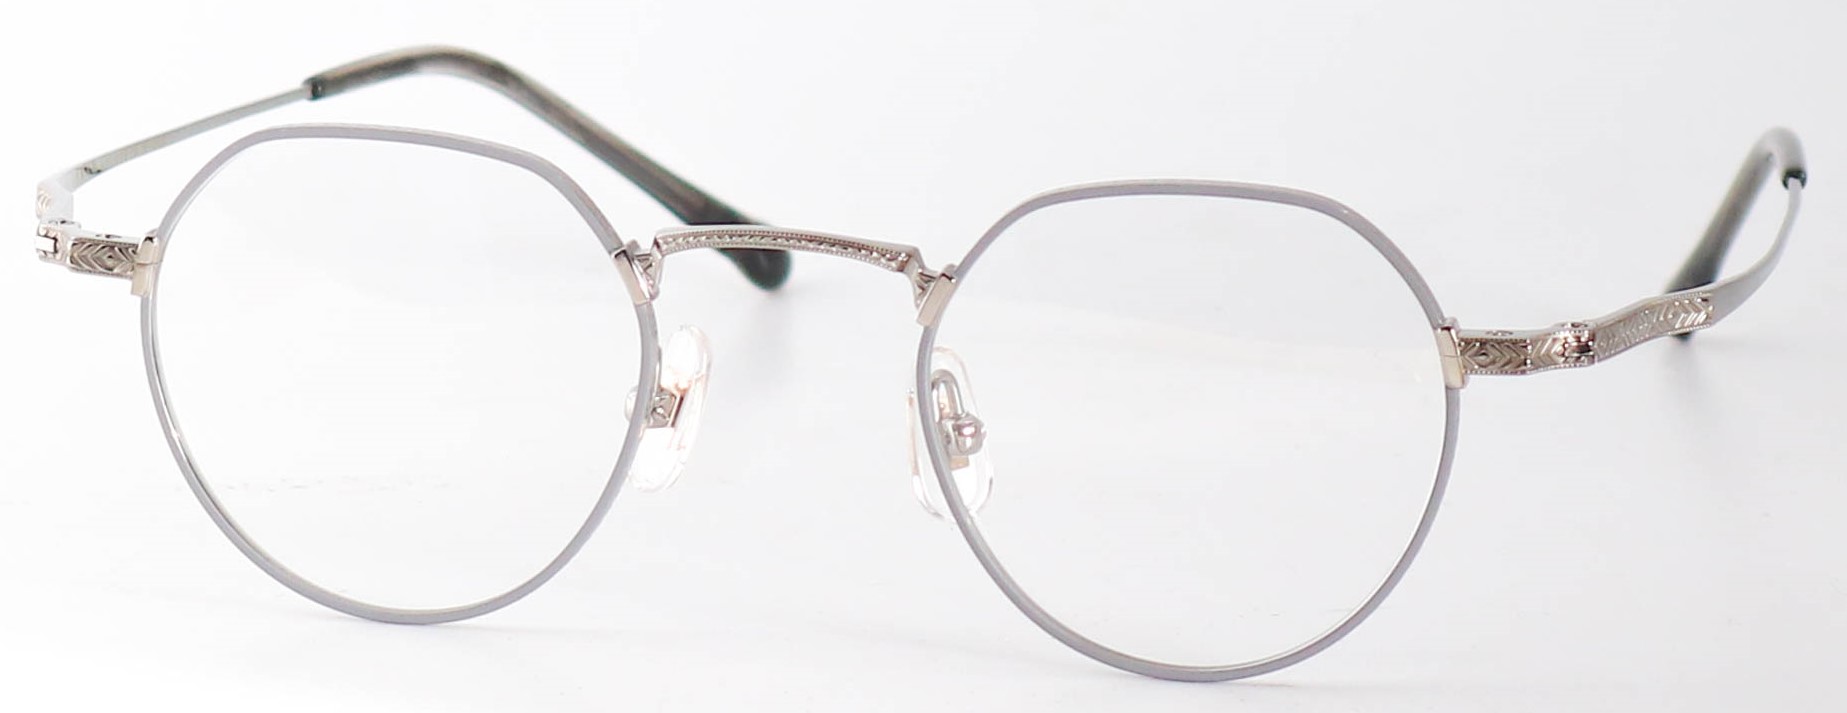 眼鏡のカラータイプC-2 Gray-Matt/Gray